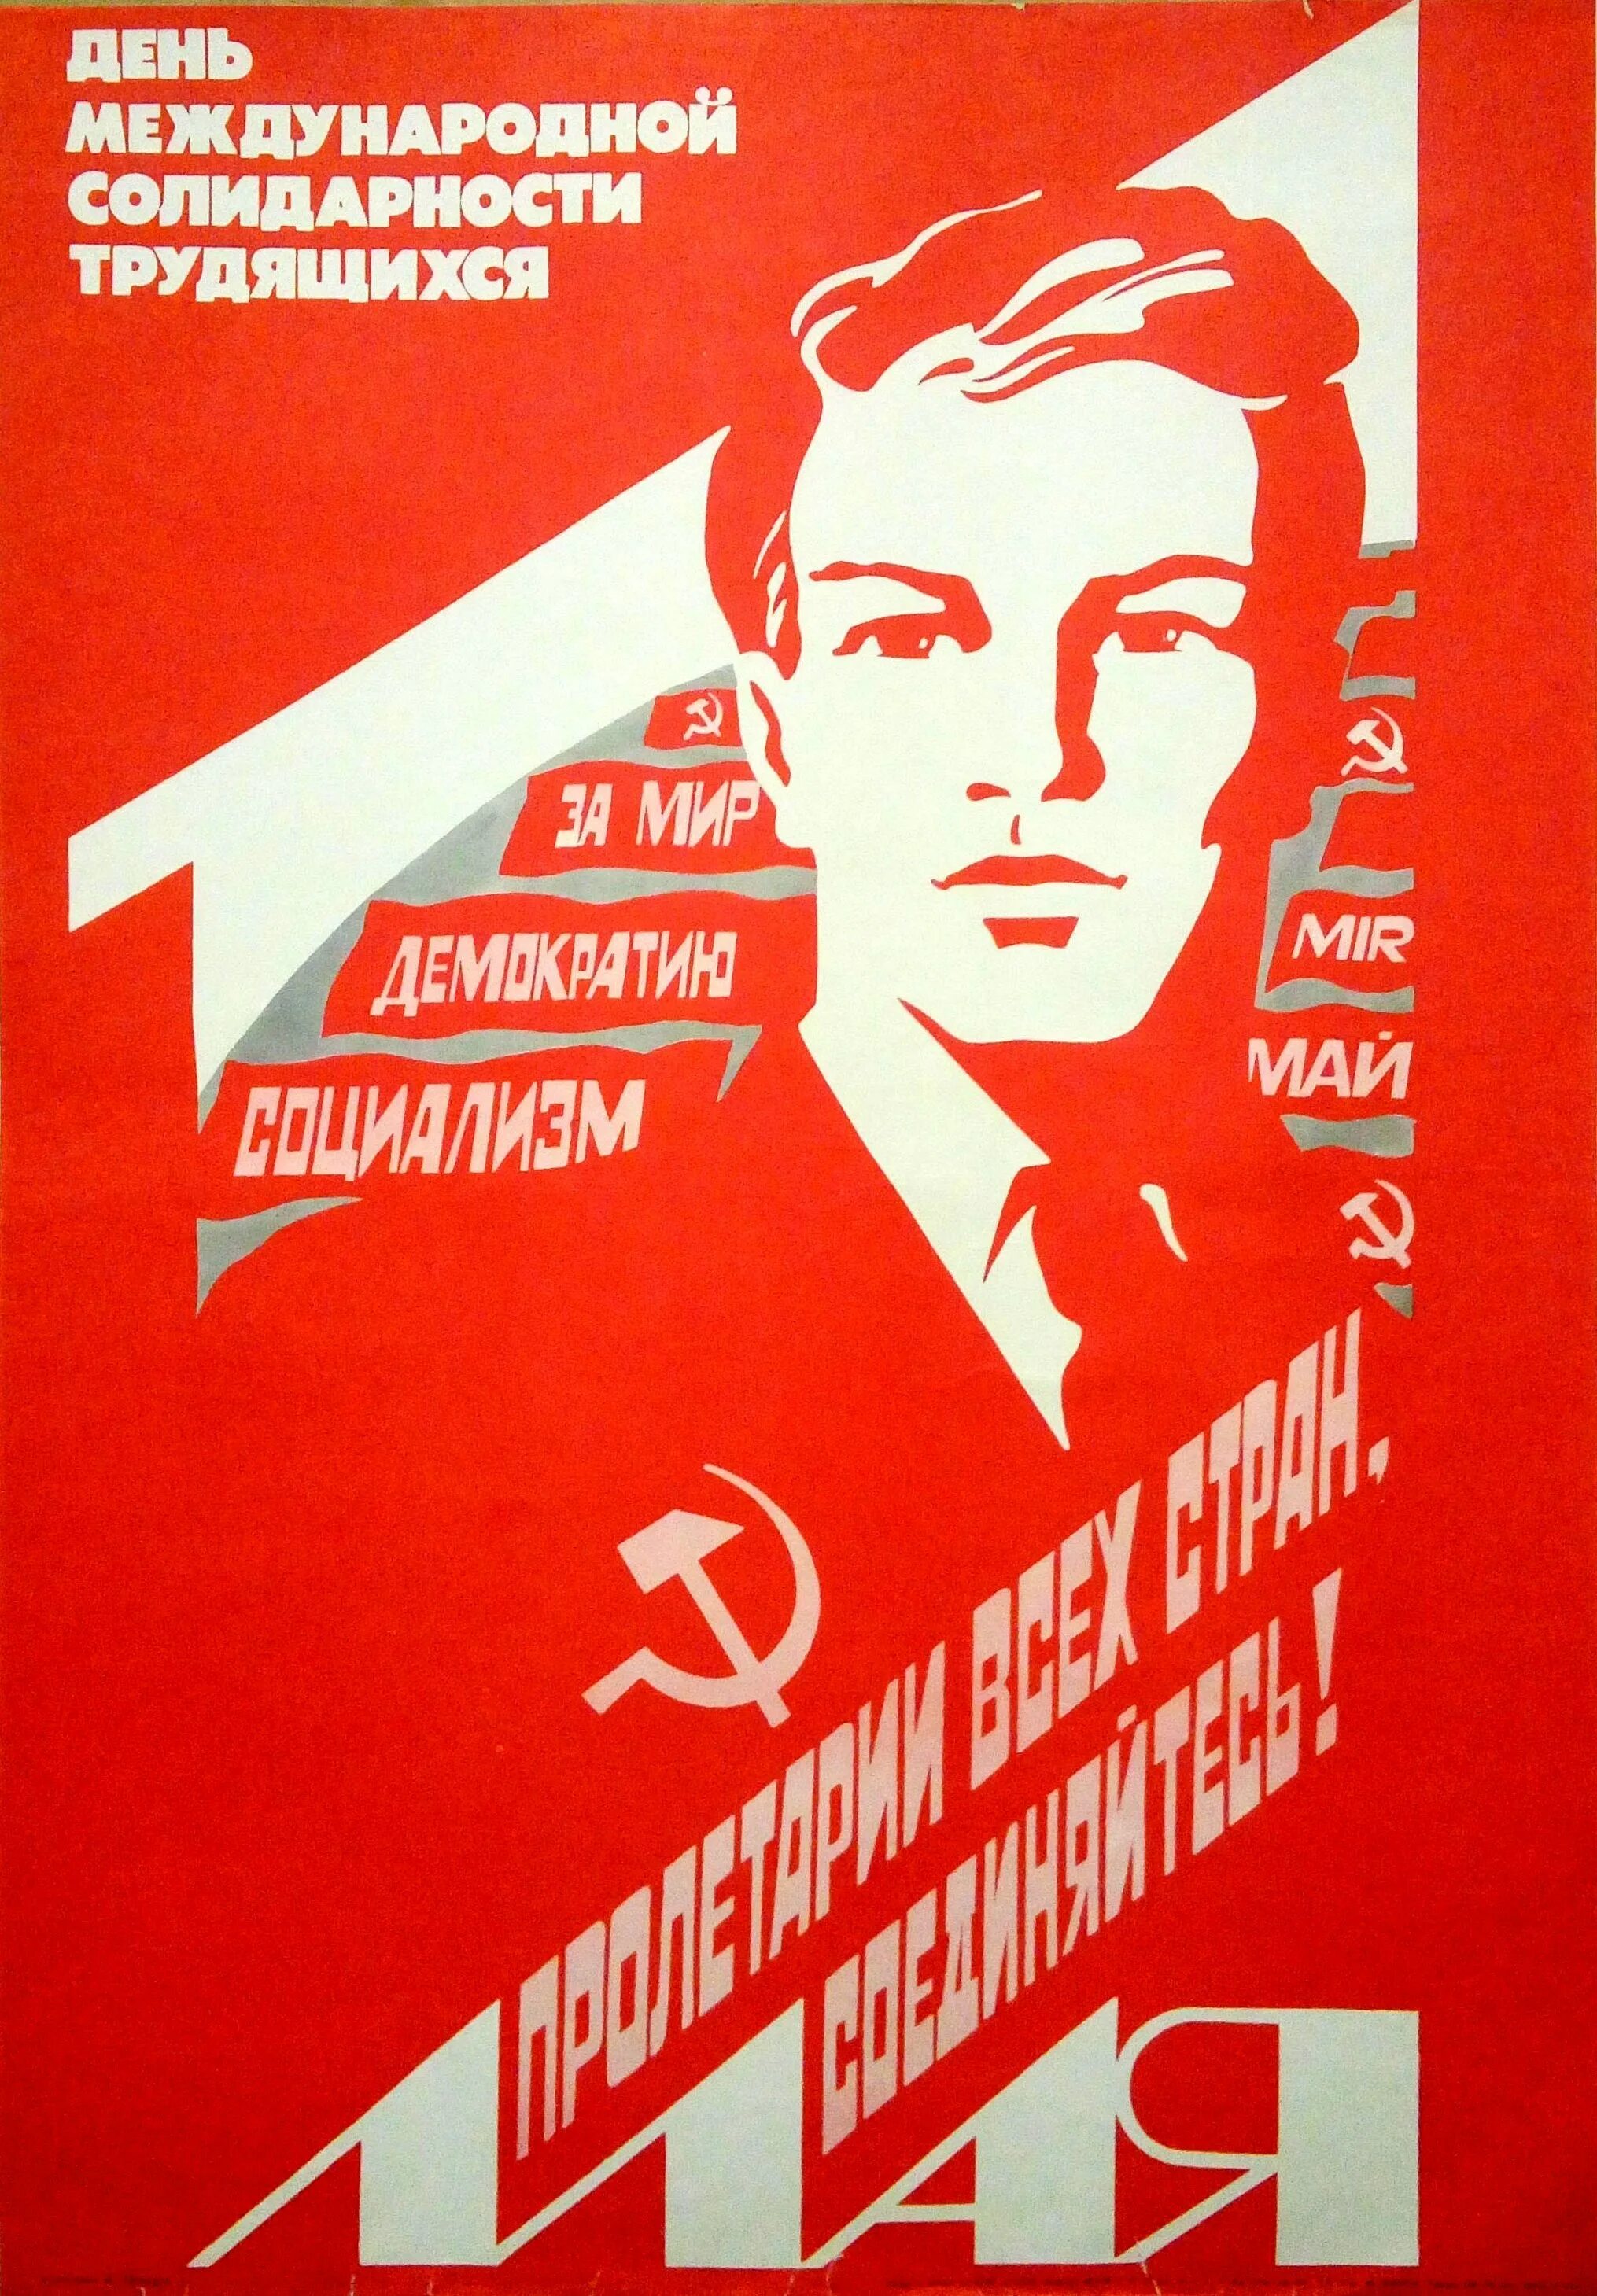 1 мая международный. День международной солидарности трудящихся. С днем международной солидарности трудящихс. Ранние советские плакаты. Мир труд май советские плакаты.